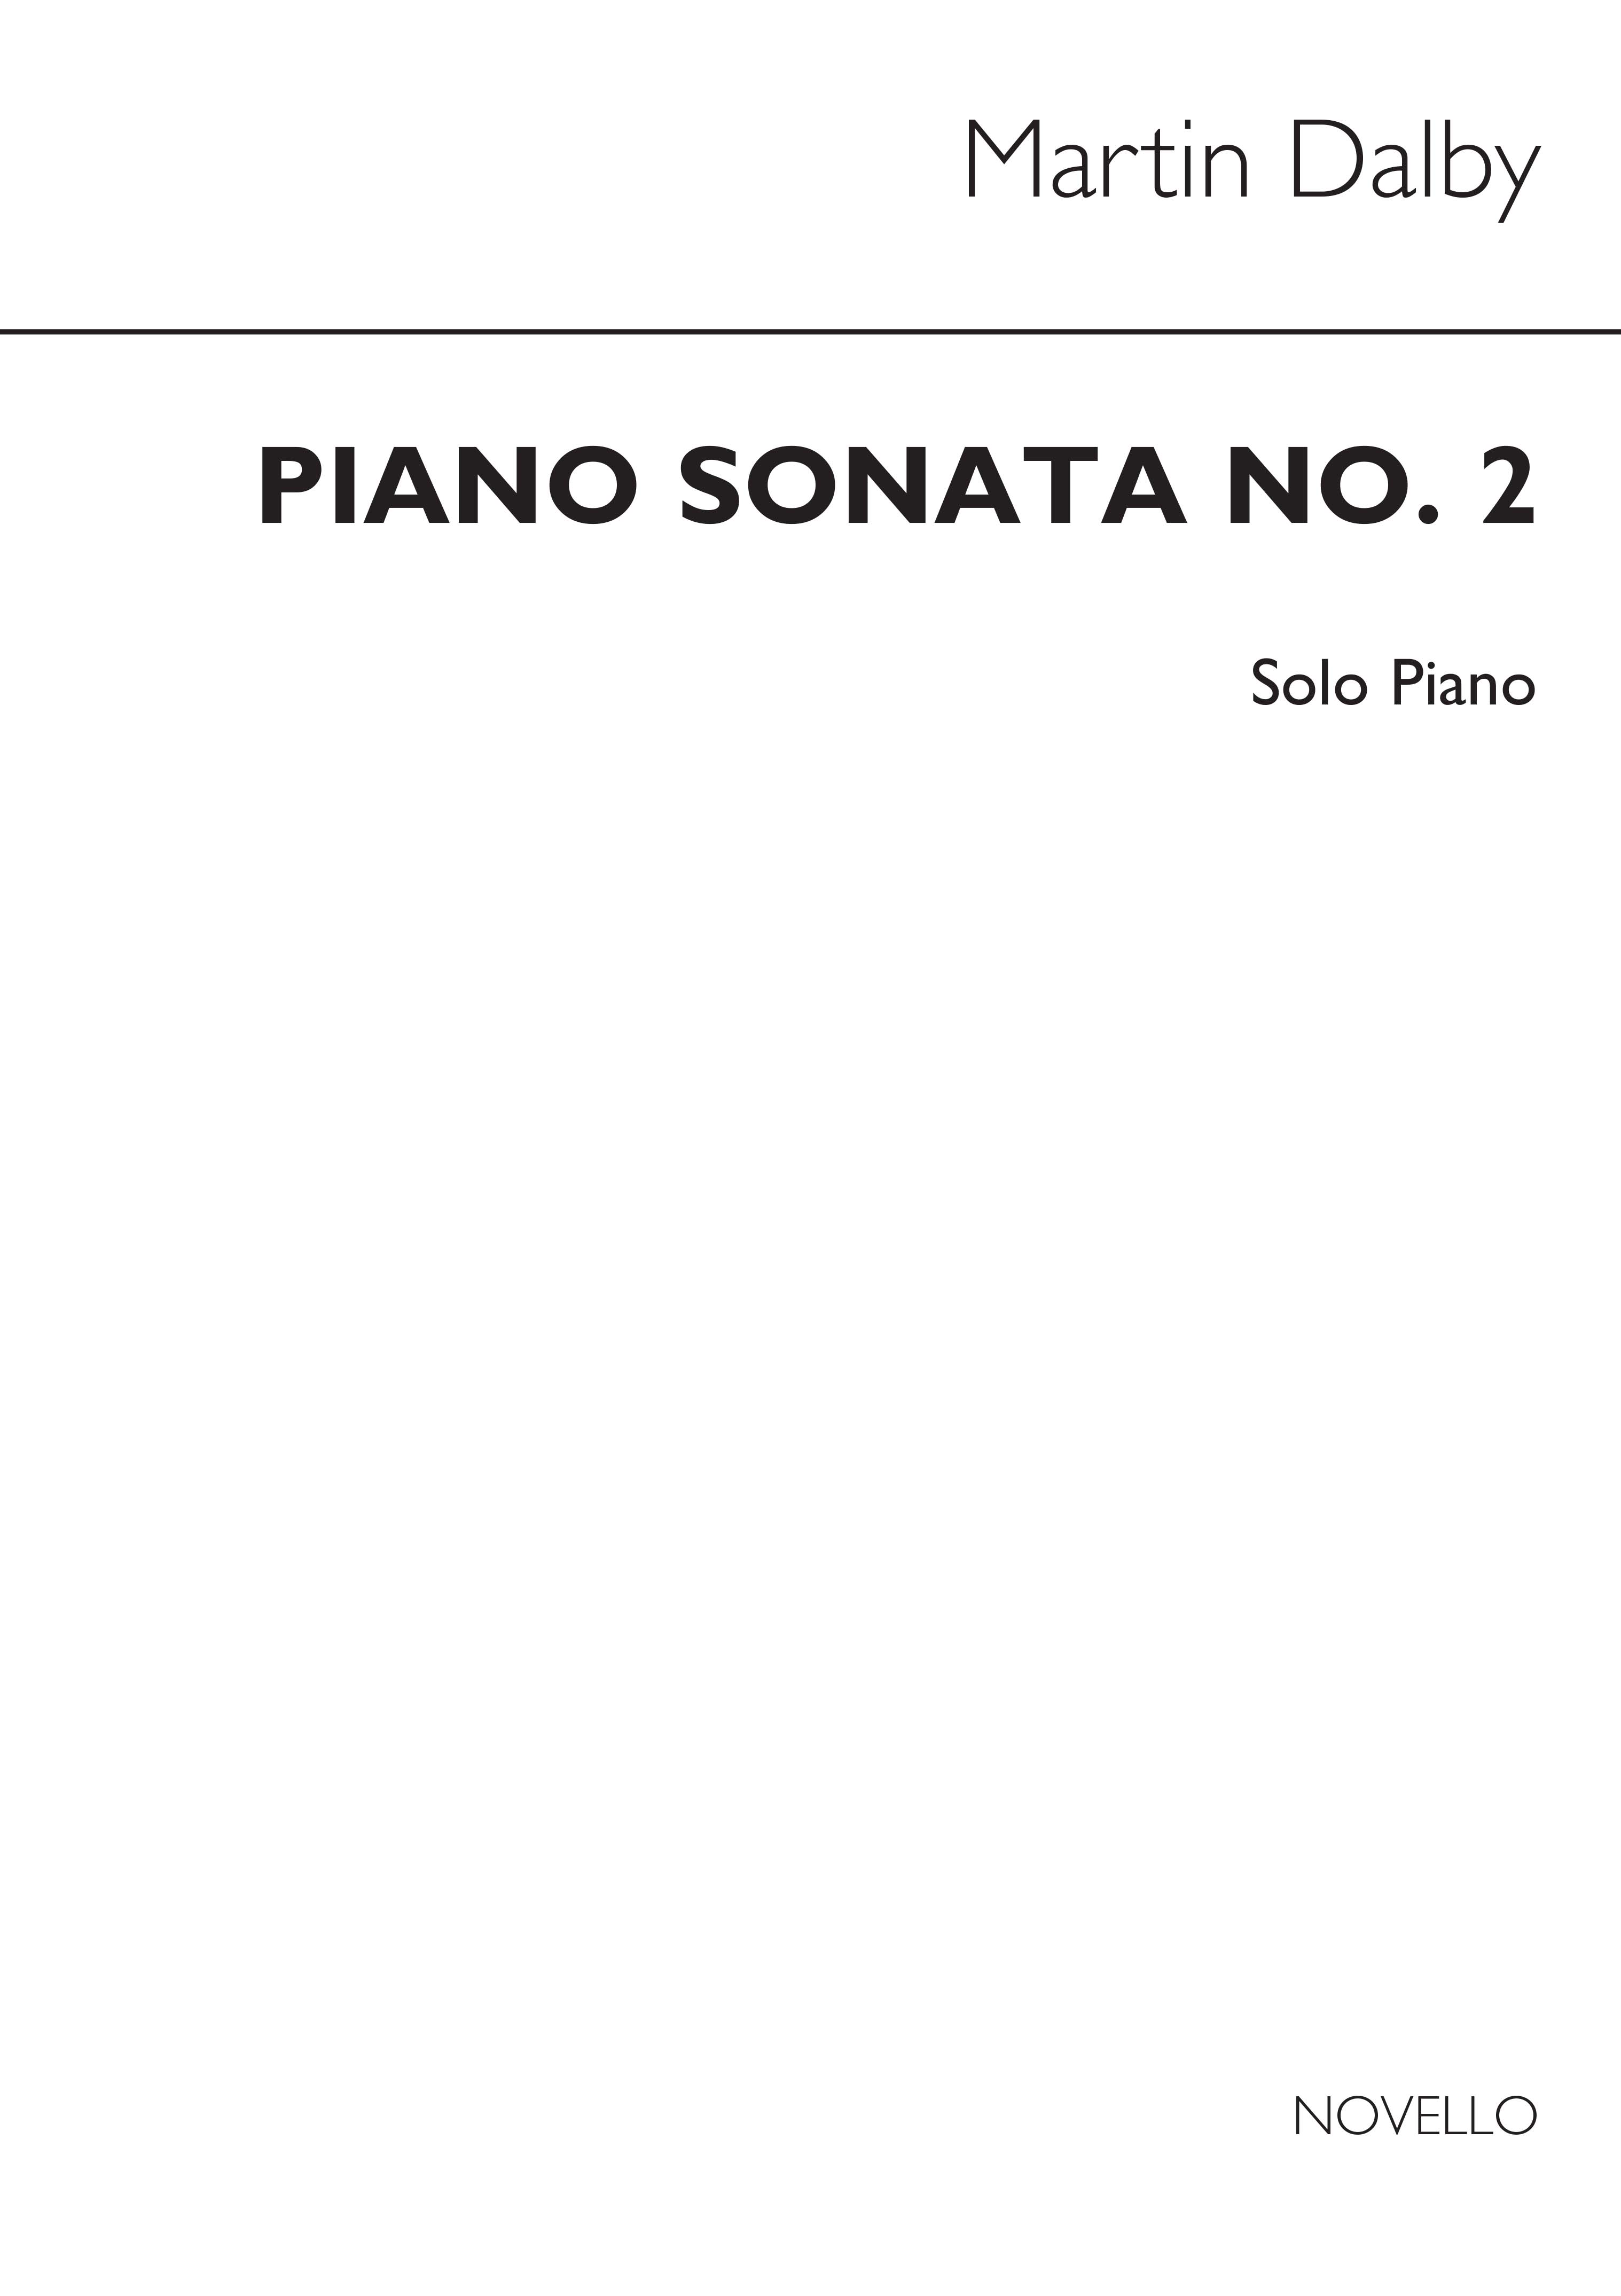 Dalby: Piano Sonata No.2